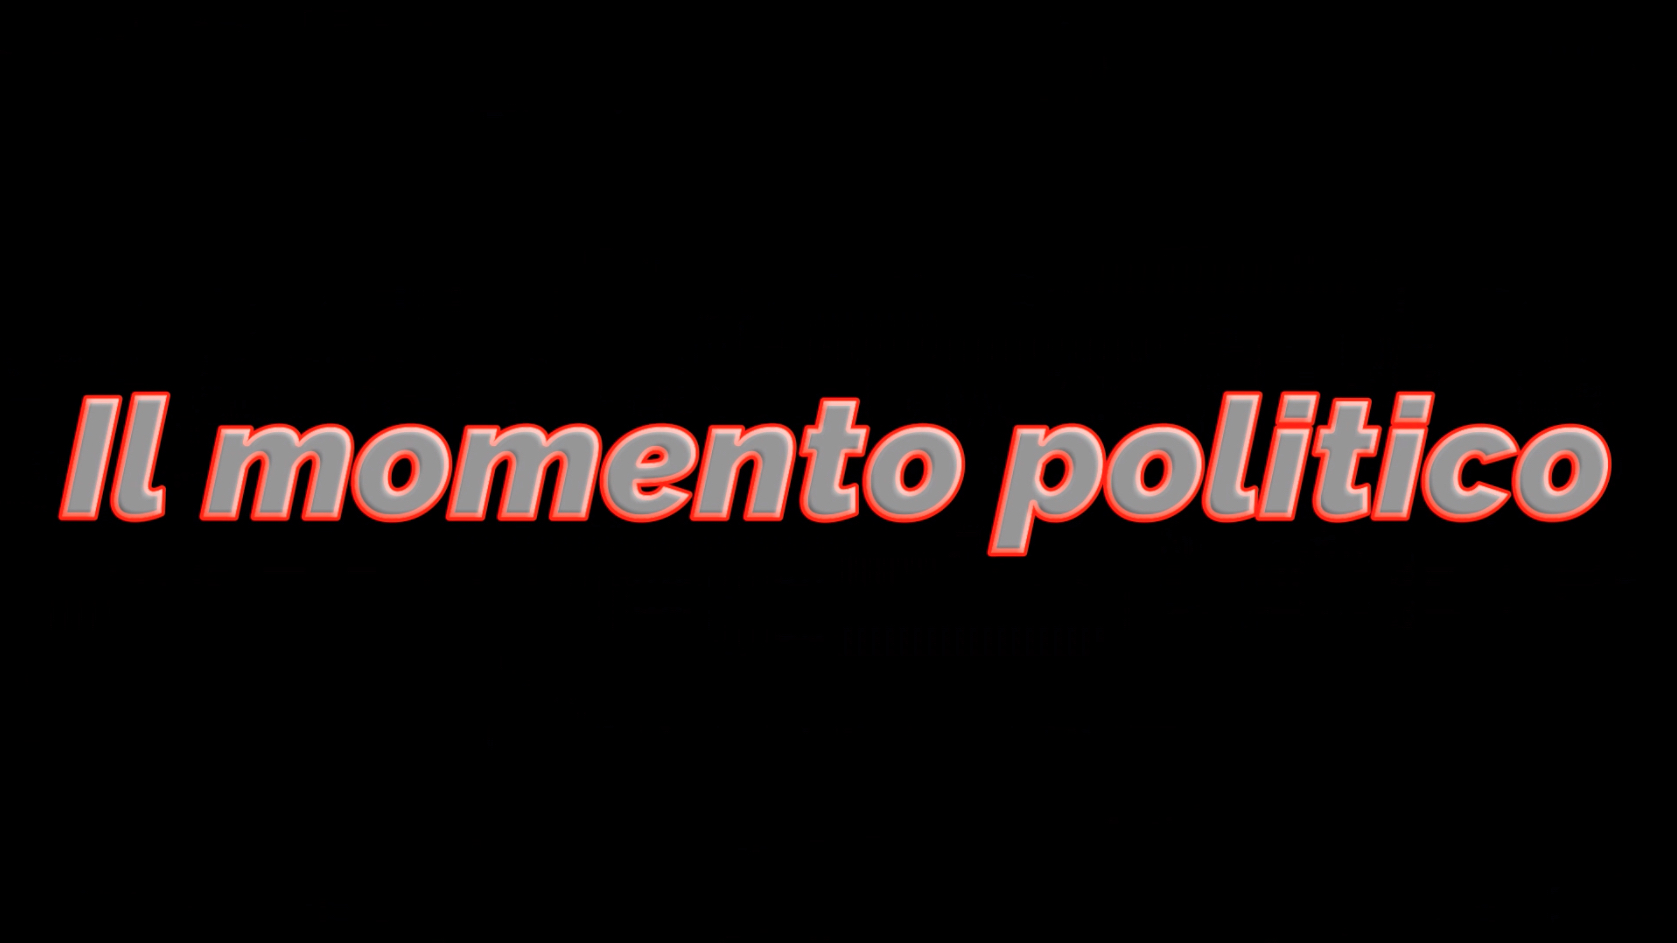 'Il momento politico' category image